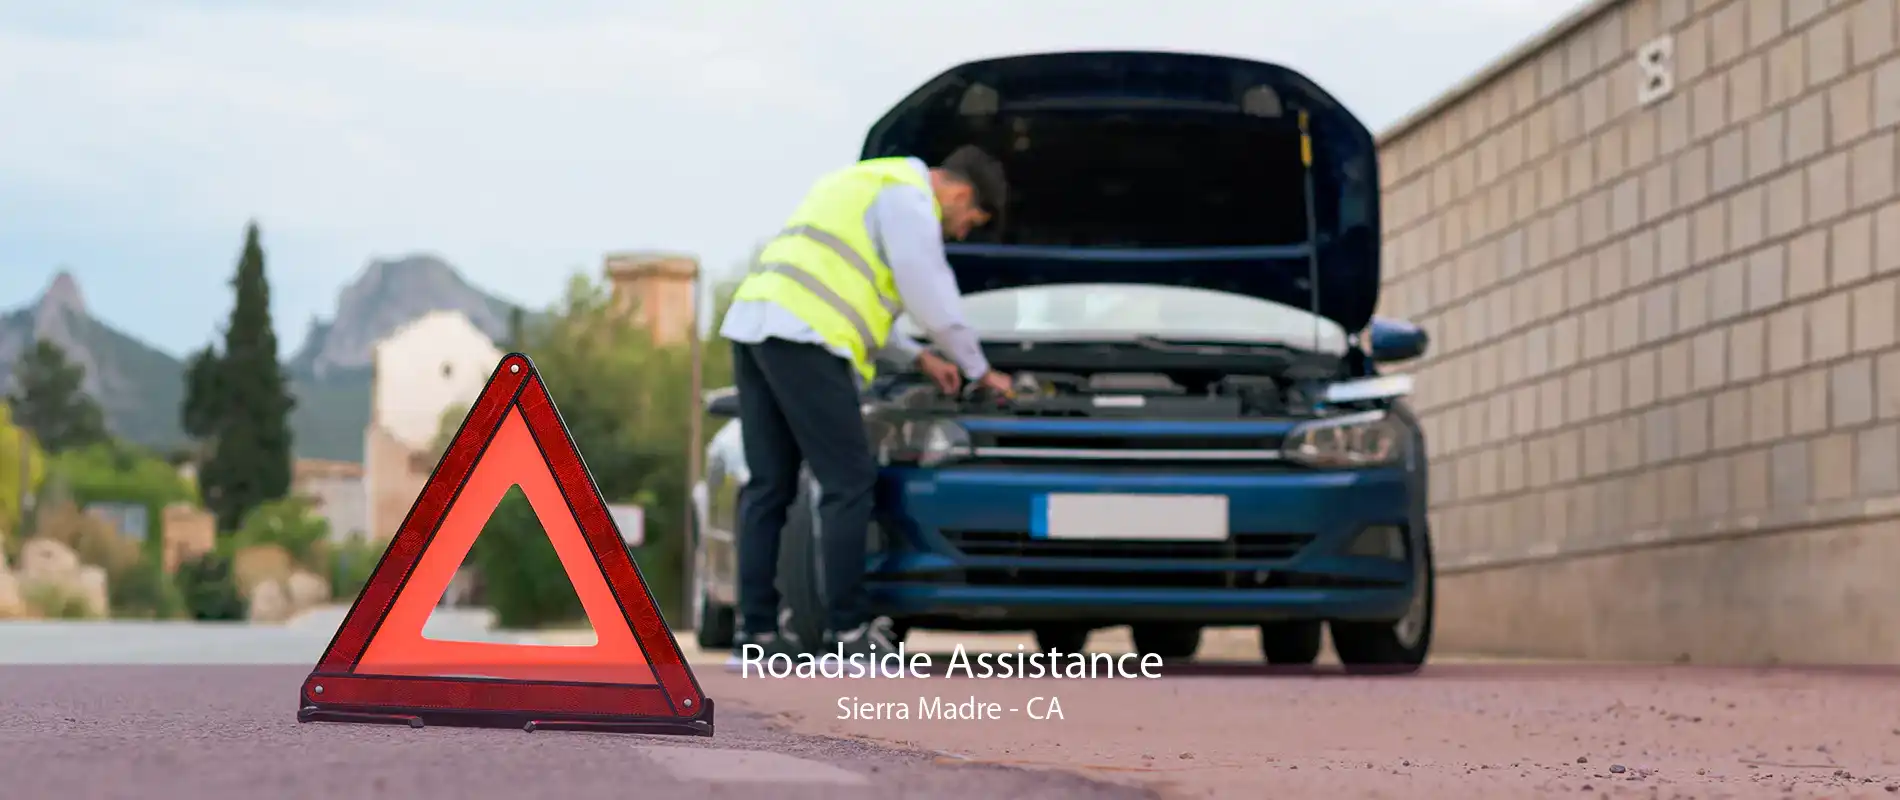 Roadside Assistance Sierra Madre - CA